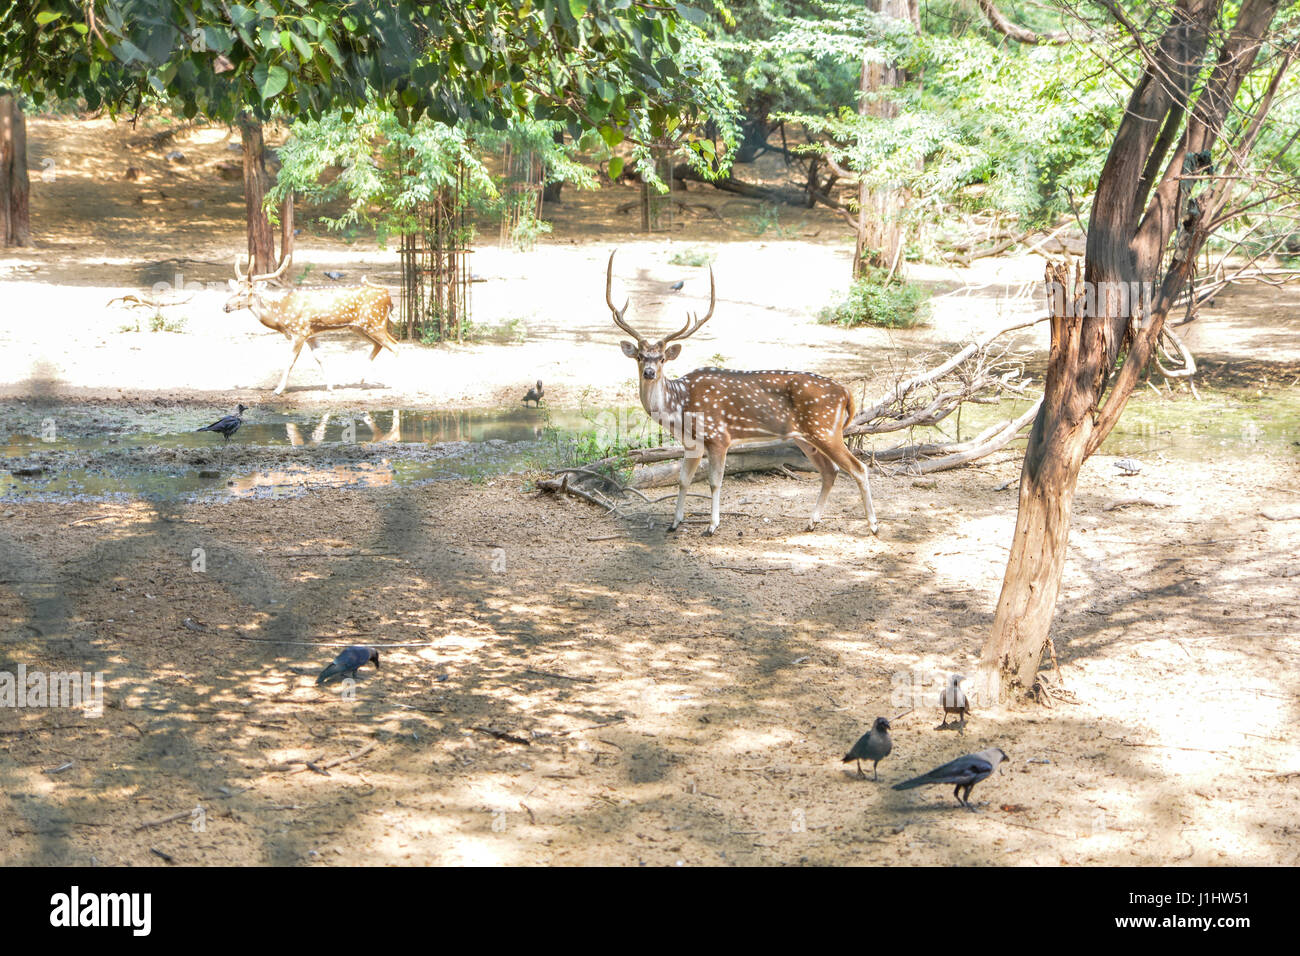 Deer in an enclosure at Delhi's Hauz Khas Park. Stock Photo